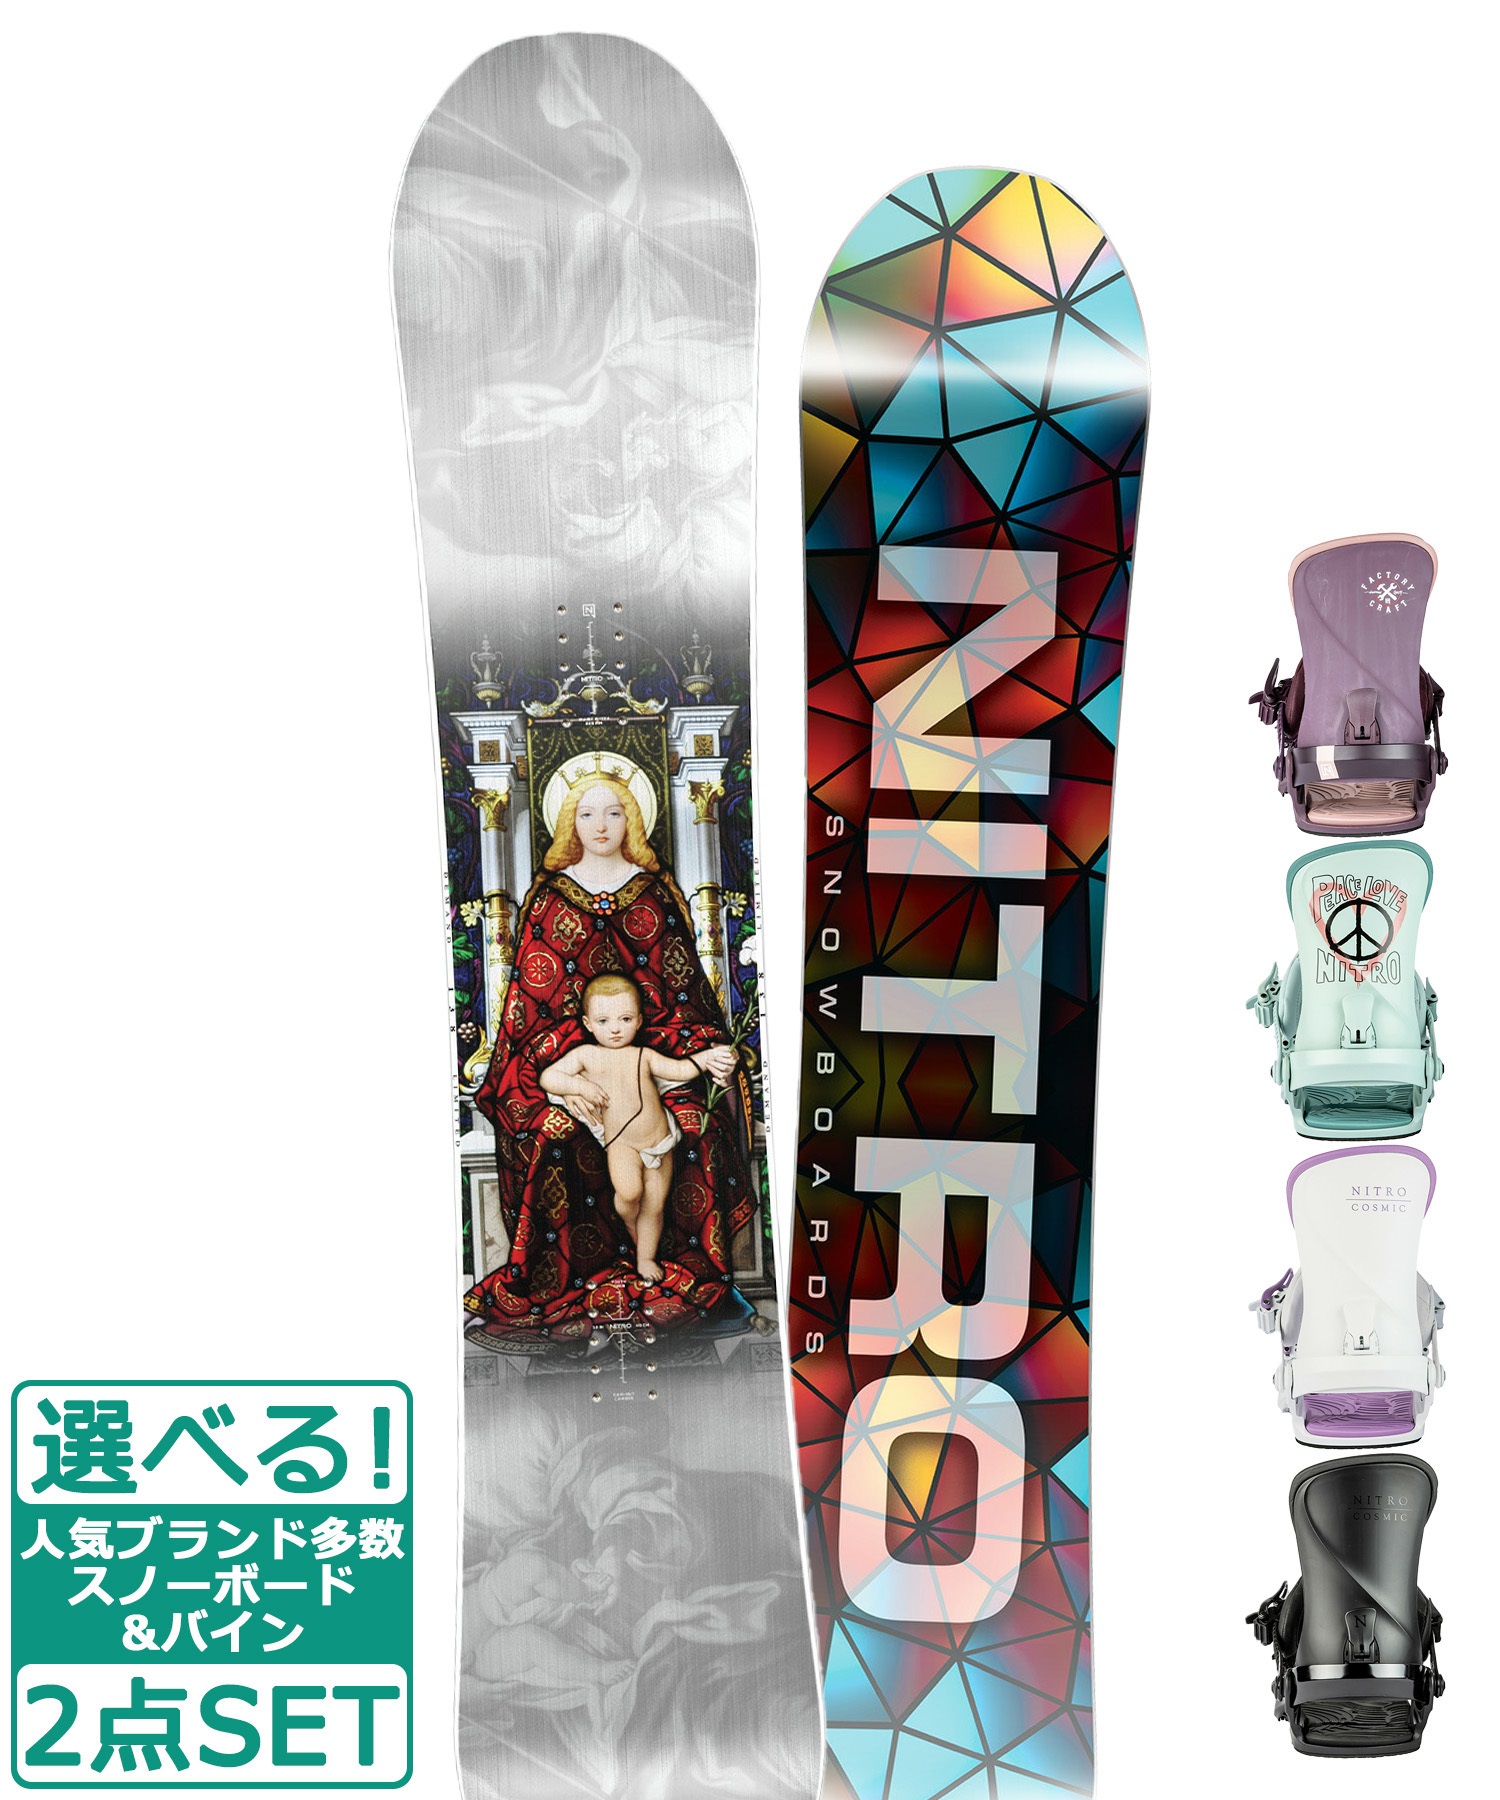 【良好】NITRO DEMAND 20-21 146cm スノーボード 板